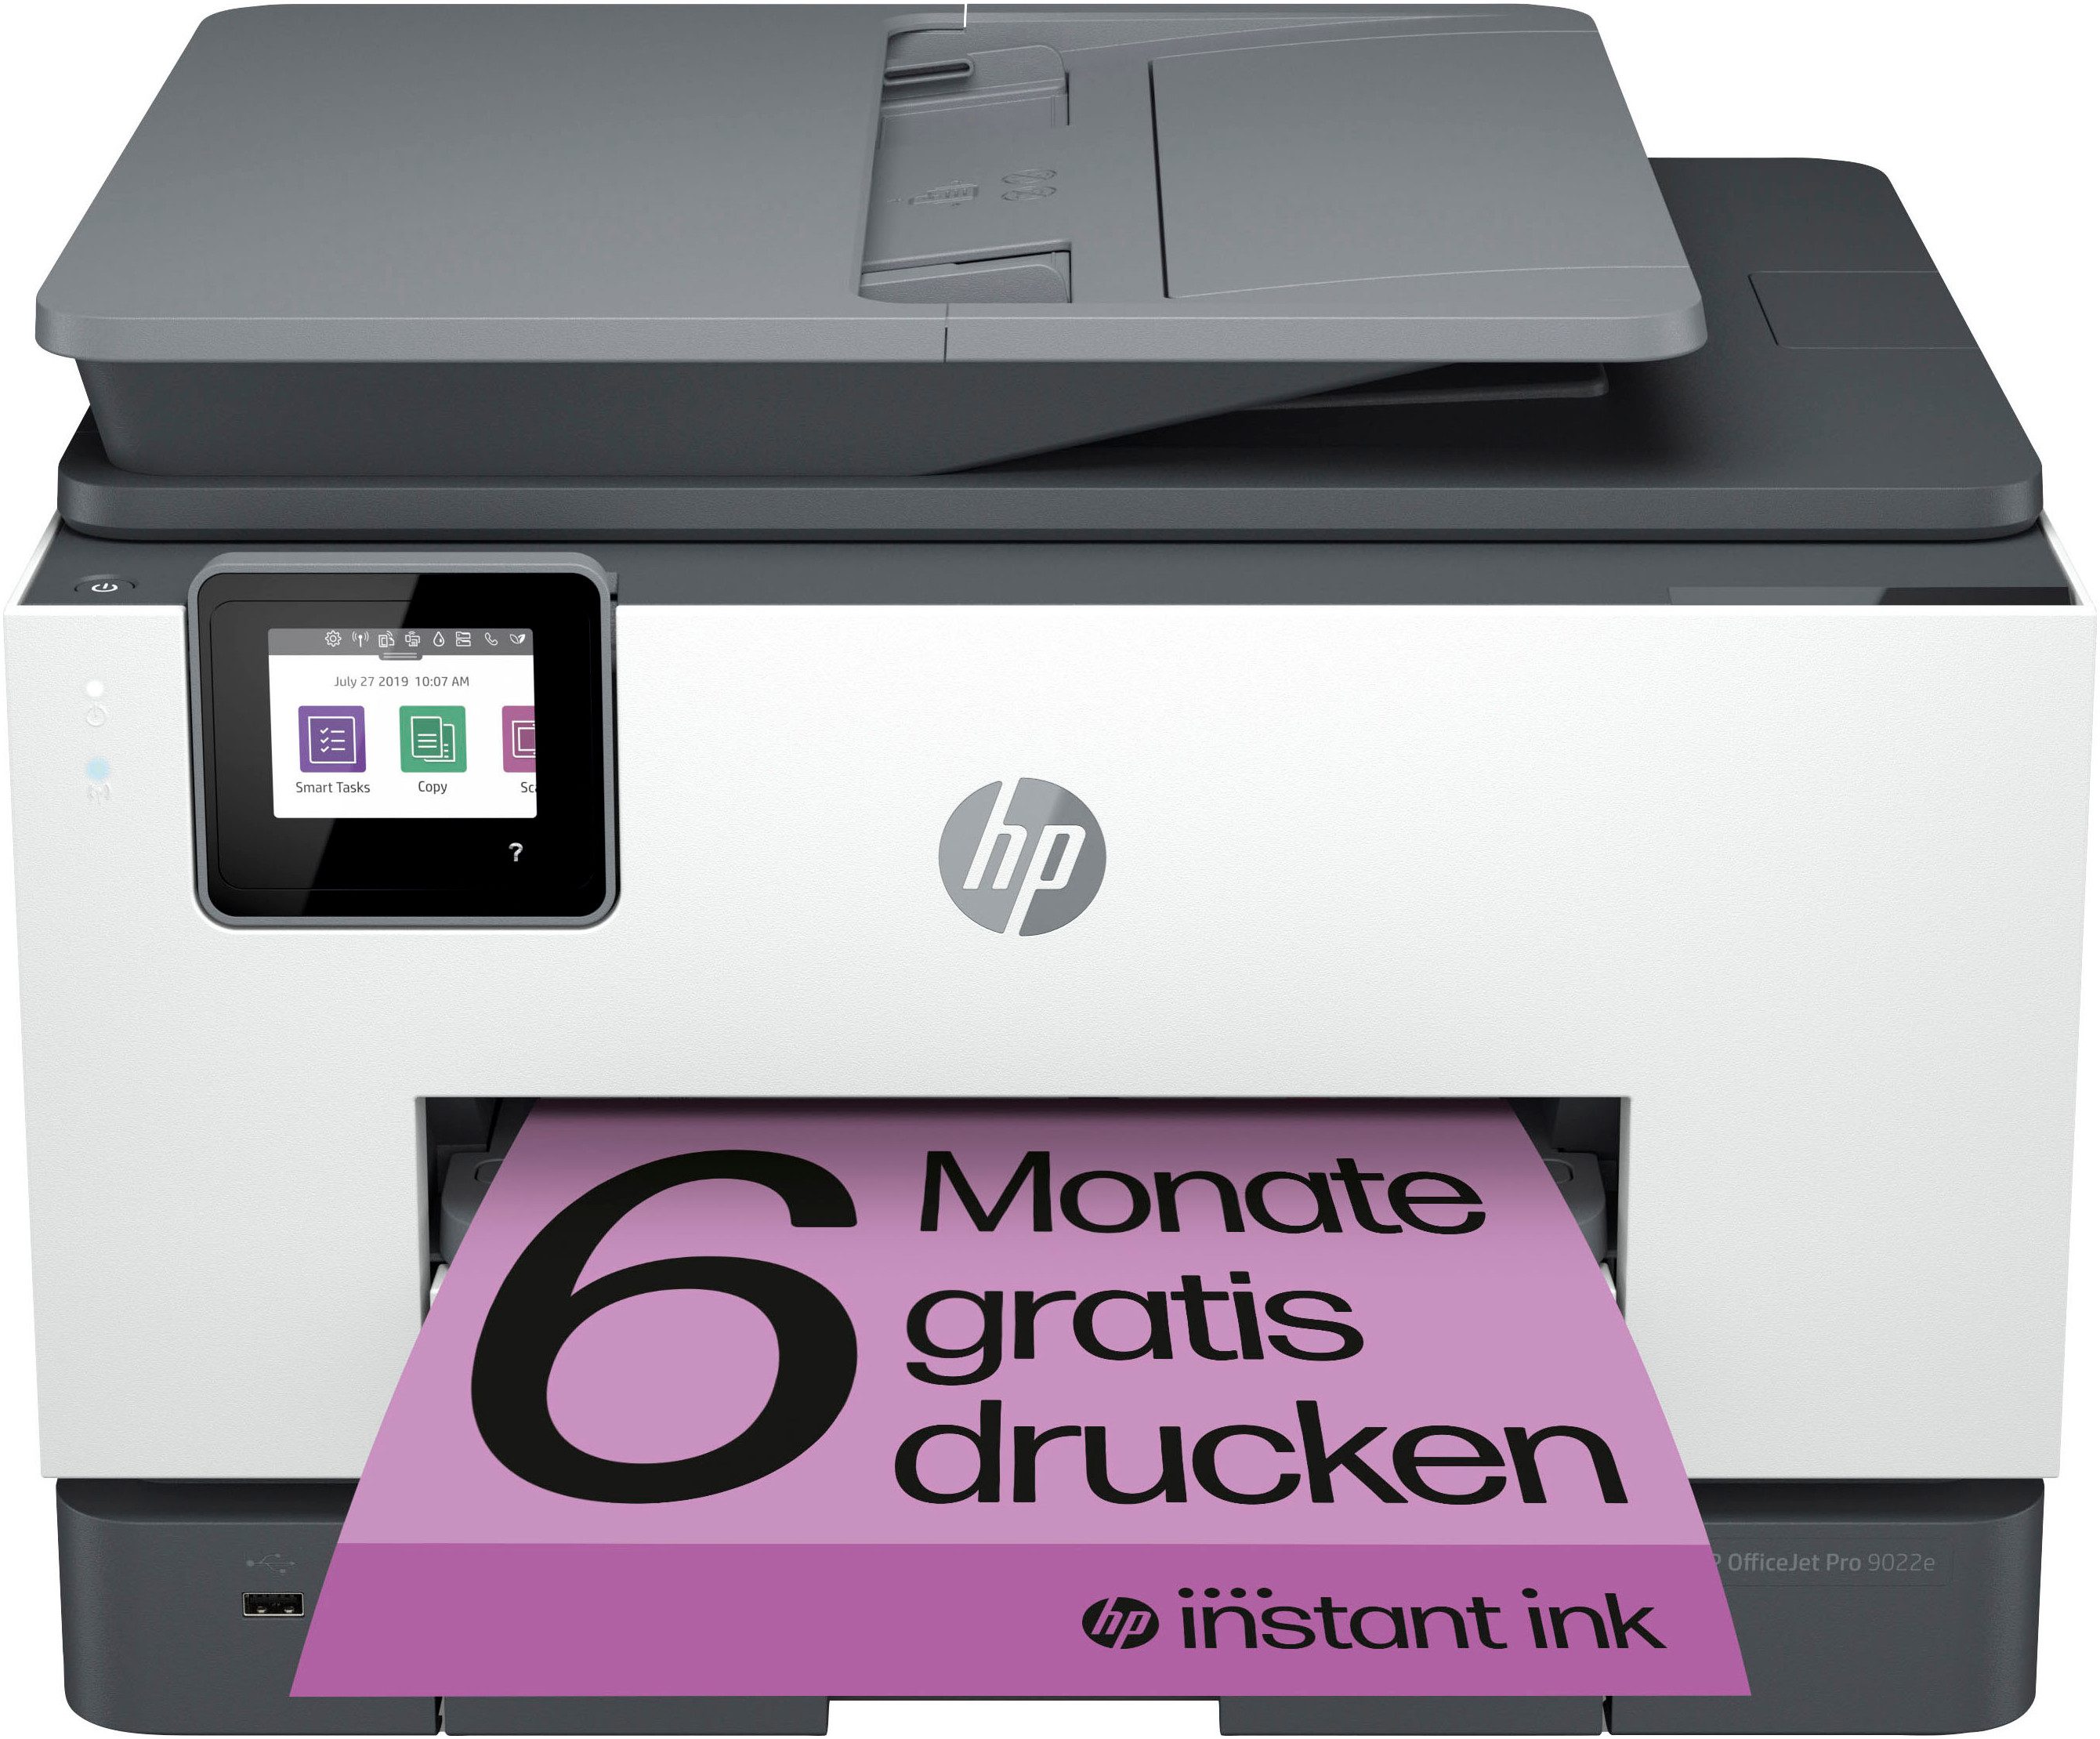 HP OfficeJet Pro 9022e Multifunktionsdrucker, (LAN (Ethernet), WLAN (Wi-Fi), 6 Monate gratis Drucken mit HP Instant Ink inklusive)